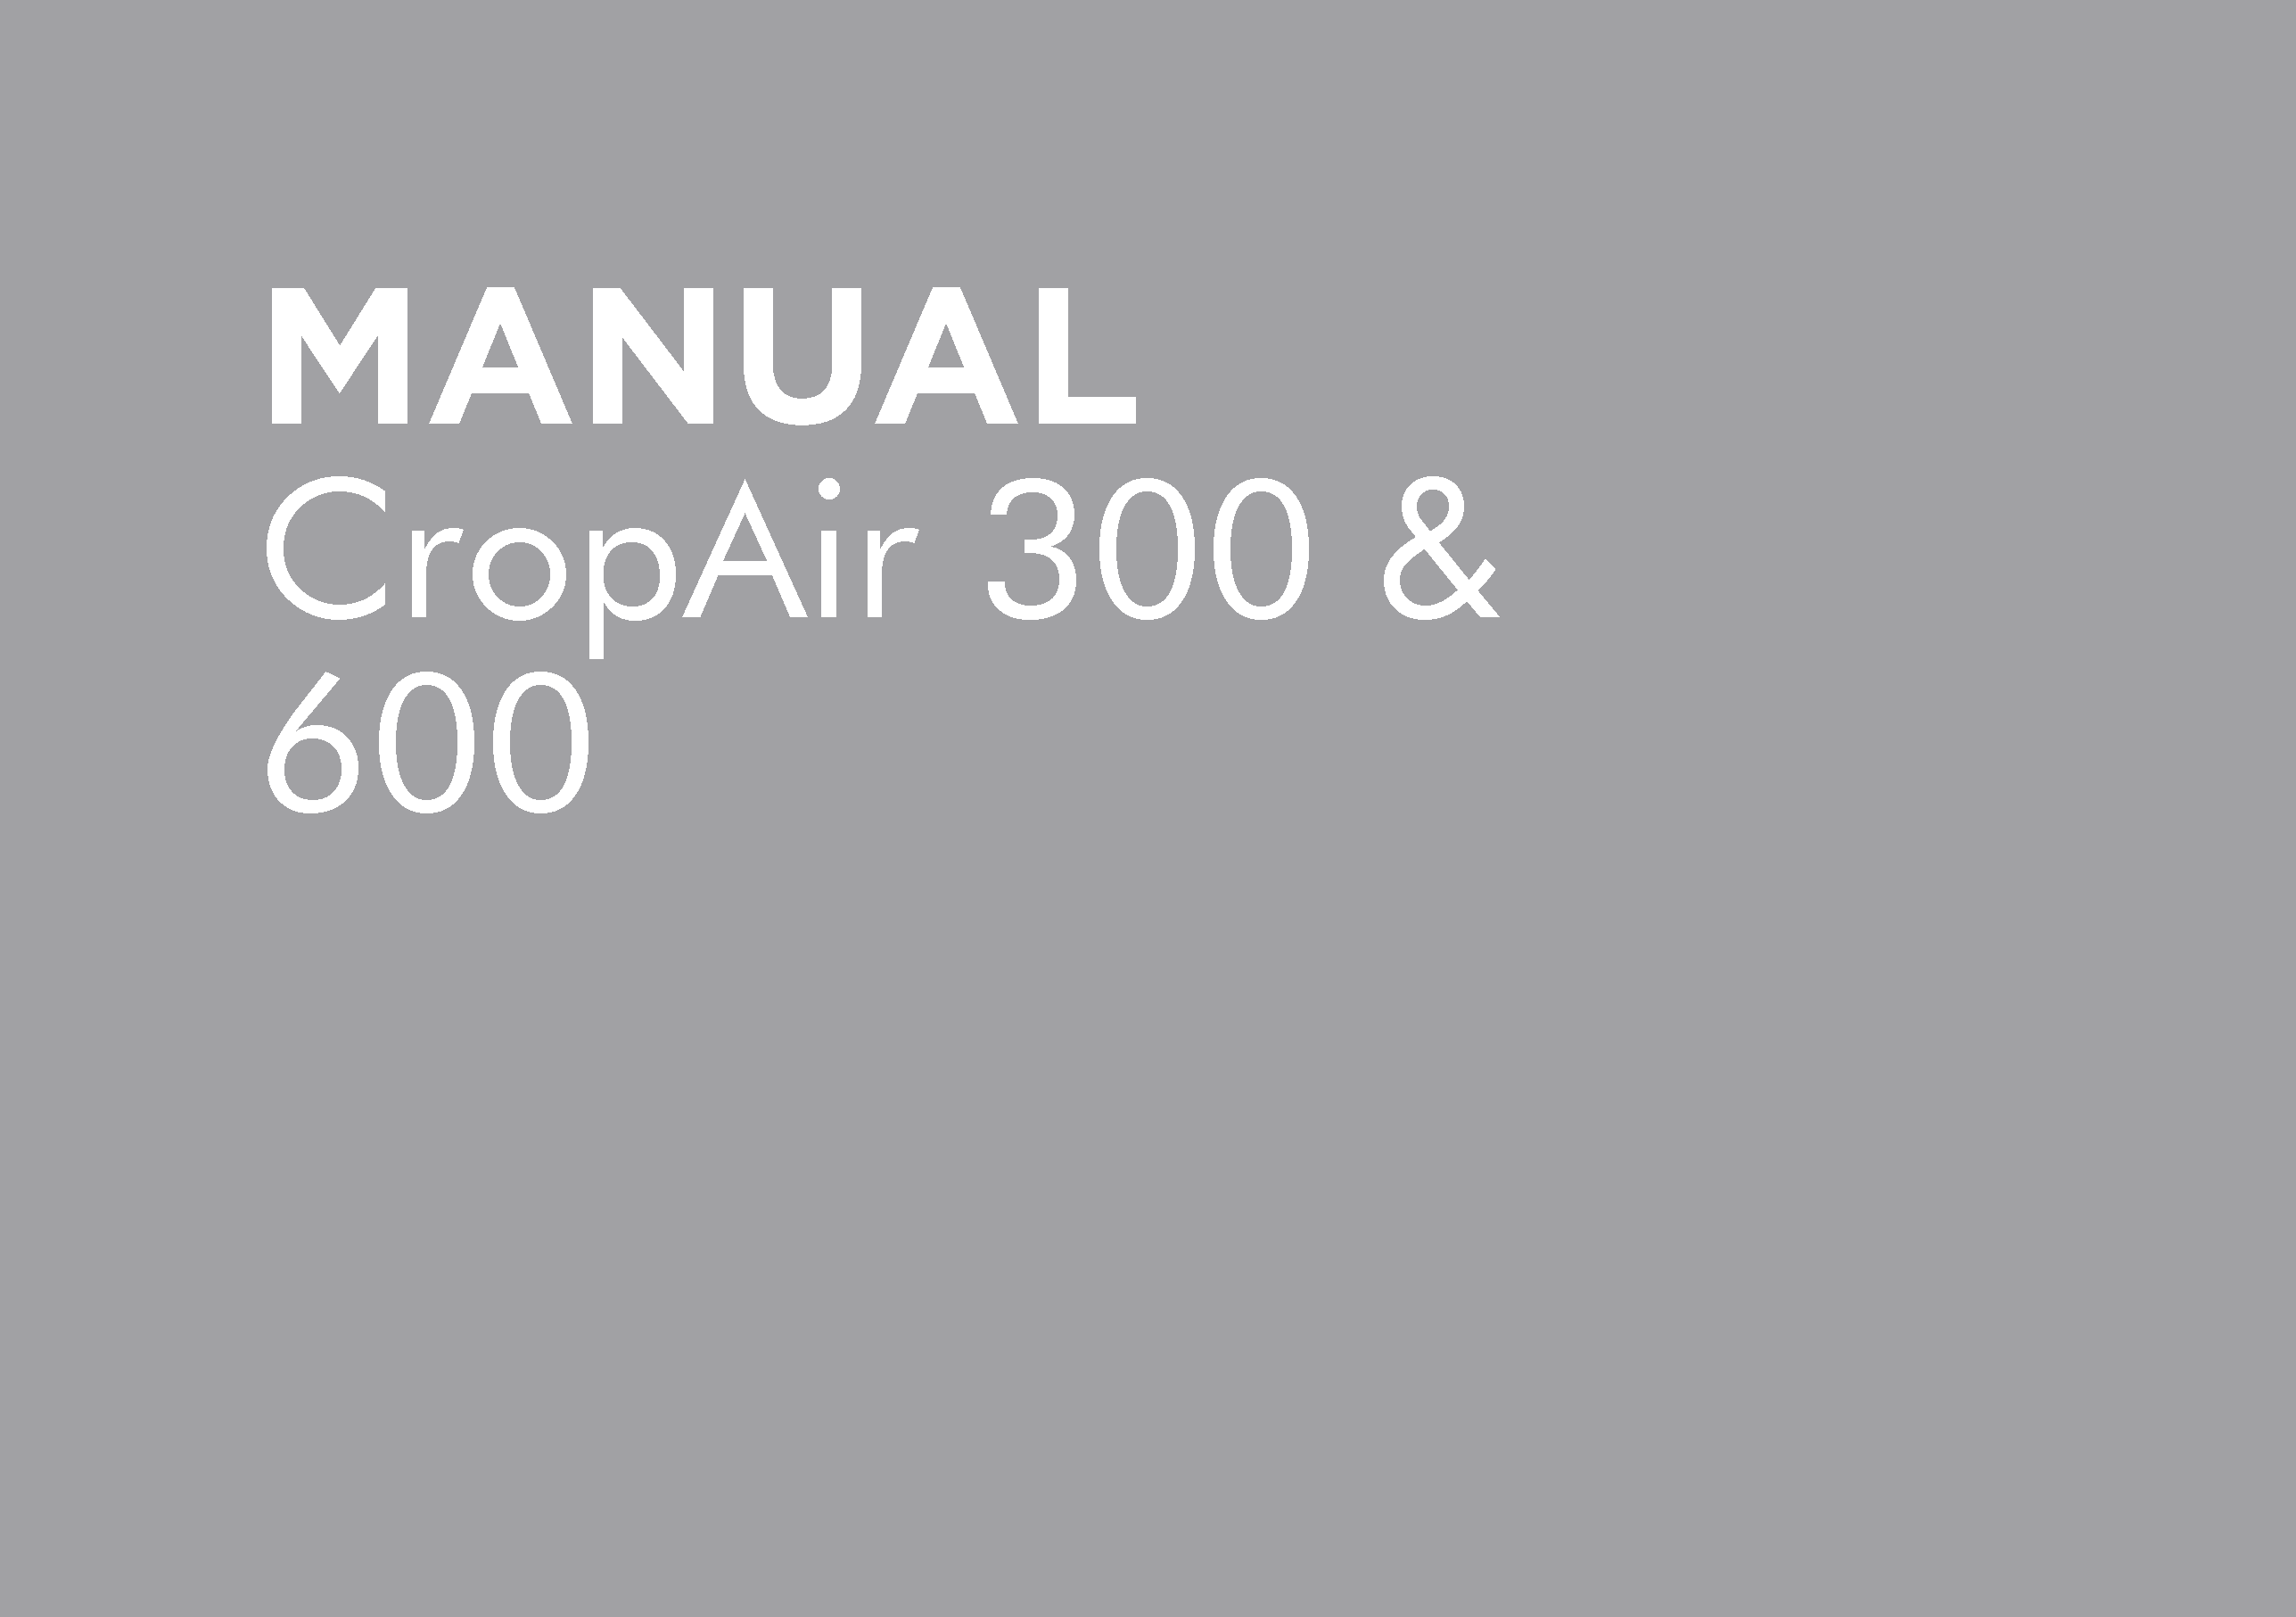 CROPAIR 300 & 600 MANUAL – LP-OMCROPAIR-A